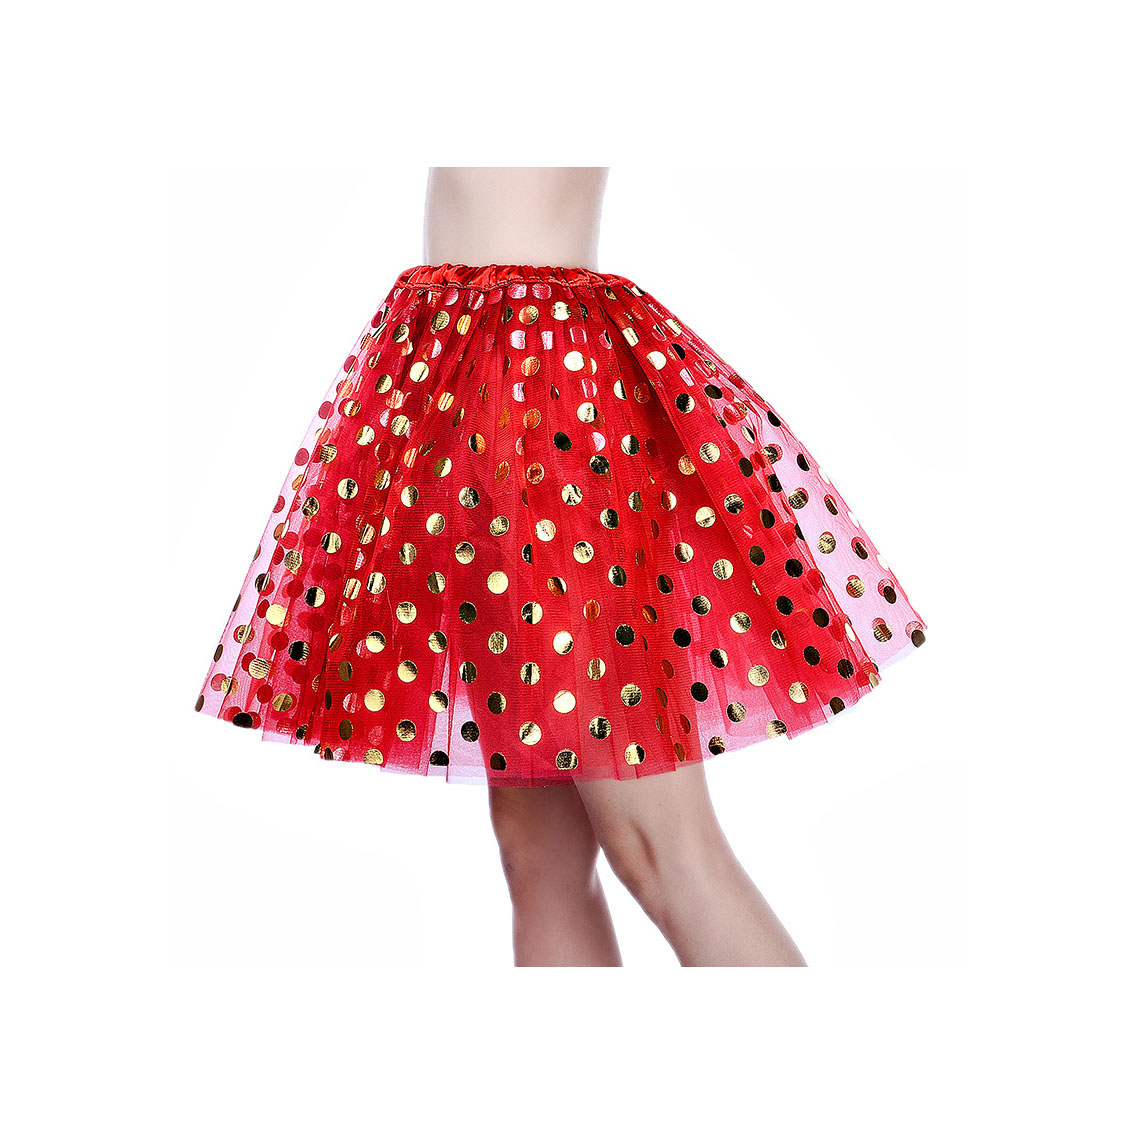 Adult Tutu Skirt Sequin Gilding Polka Dot 3 Layers Party Dance Ballet Pettiskirt Tulle Girl Mini Skirt Red+gold